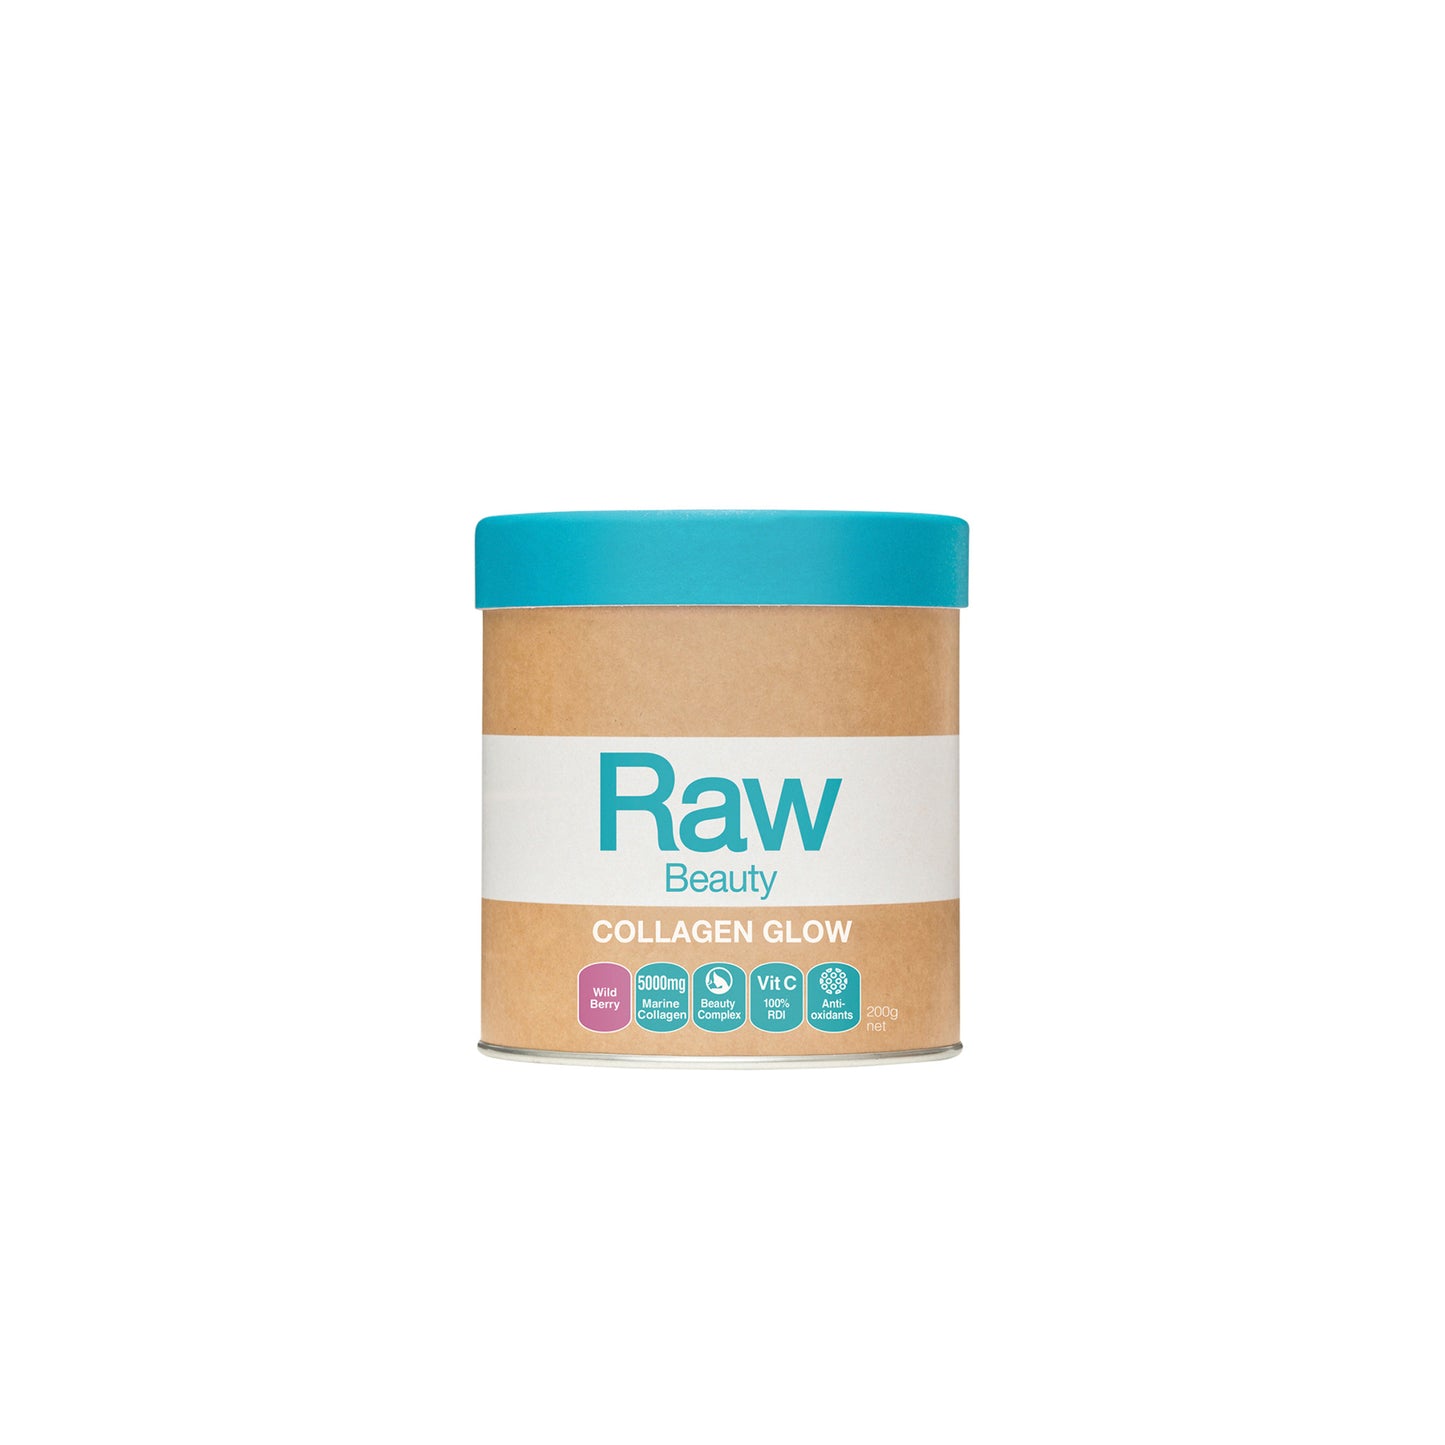 Raw Beauty Collagen Glow - Wild Berry 200g - Amazonia | MLC Space